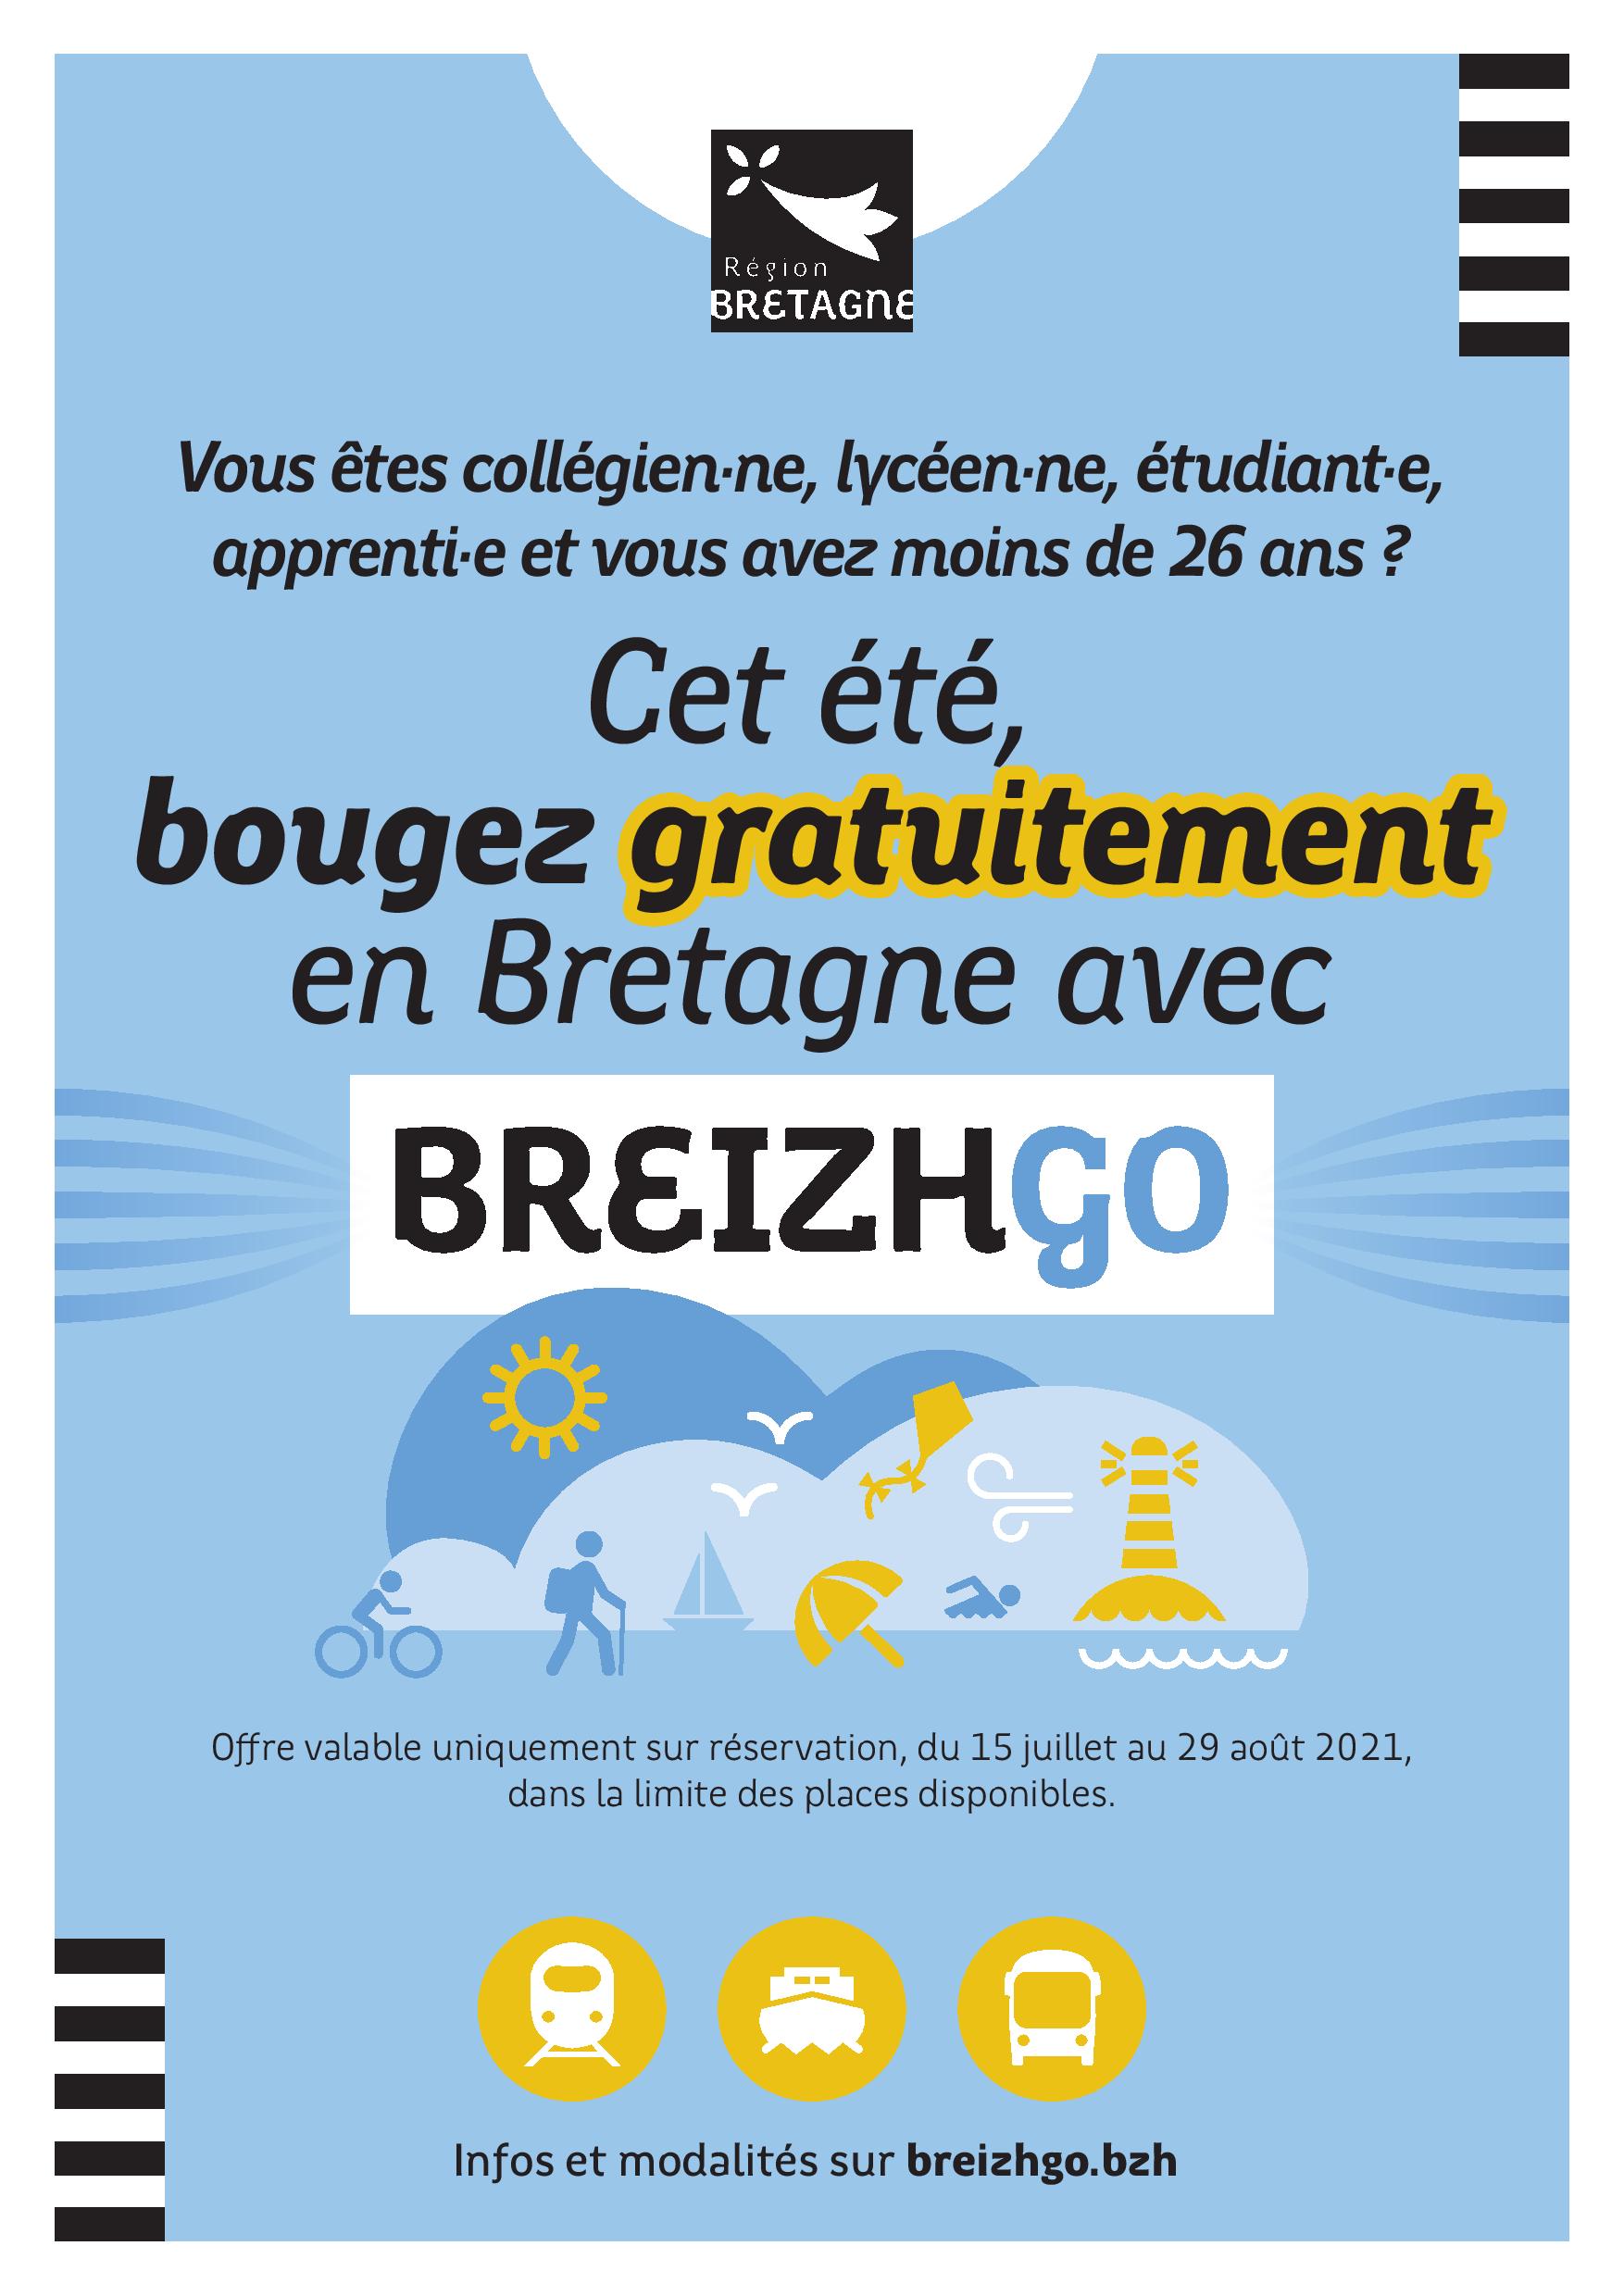 Collégiens, lycéens, apprentis & étudiants de moins de 26 ans : voyagez gratuitement sur l’ensemble du réseau BreizhGo cet été !